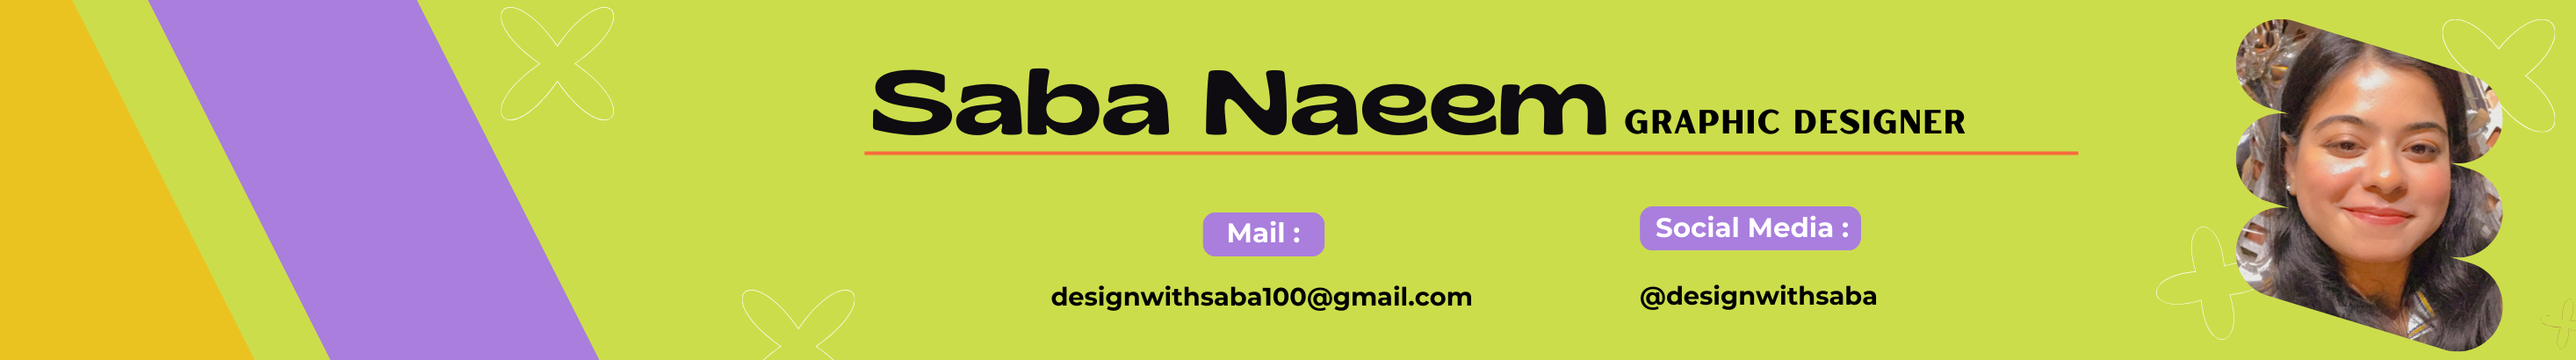 Баннер профиля Saba Naeem